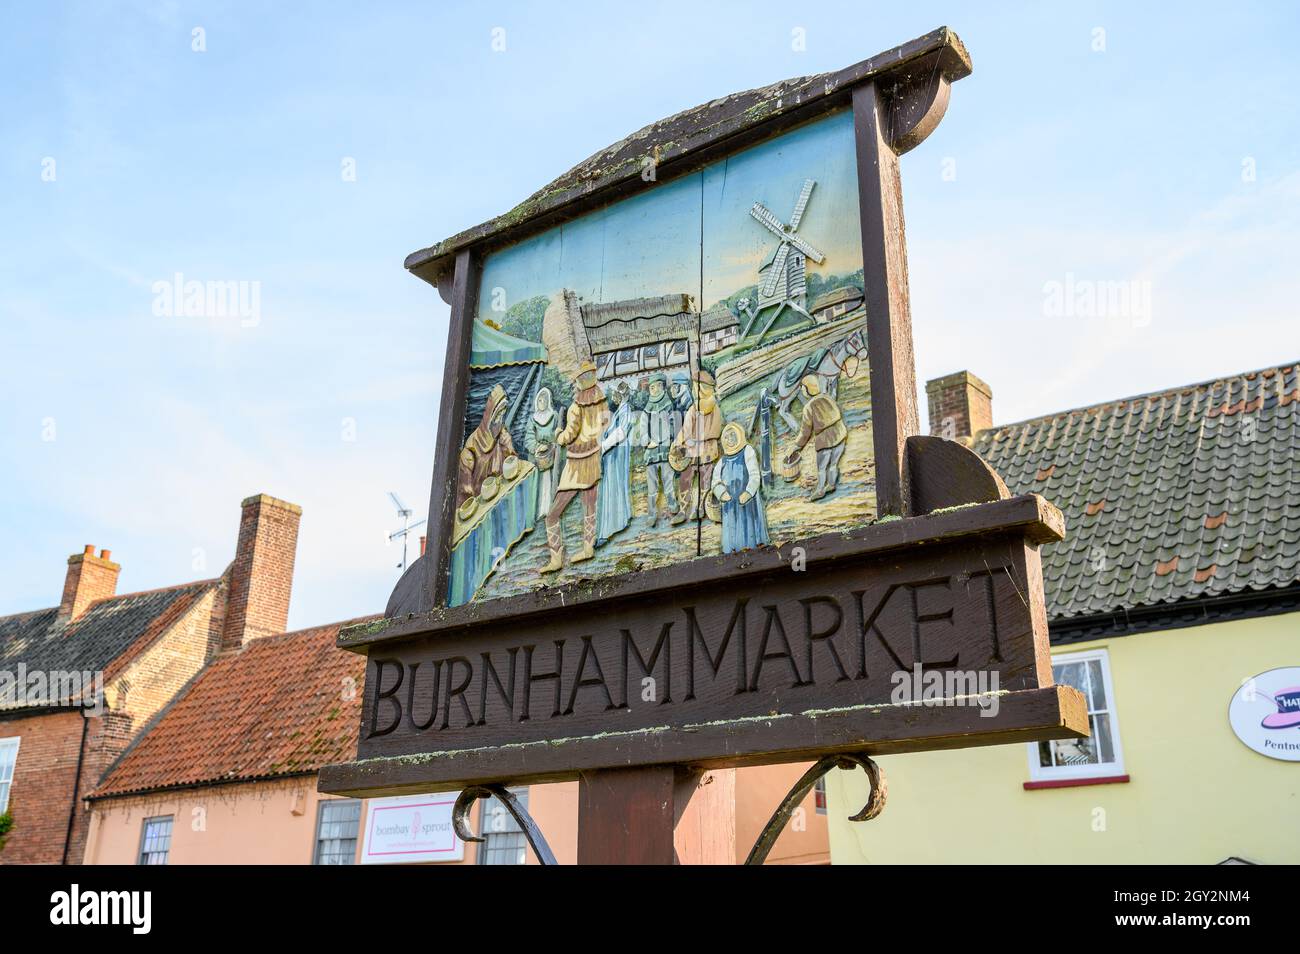 Cartello in legno del villaggio per il mercato di Burnham che raffigura una vecchia scena di mercato tradizionale. Norfolk, Inghilterra. Foto Stock